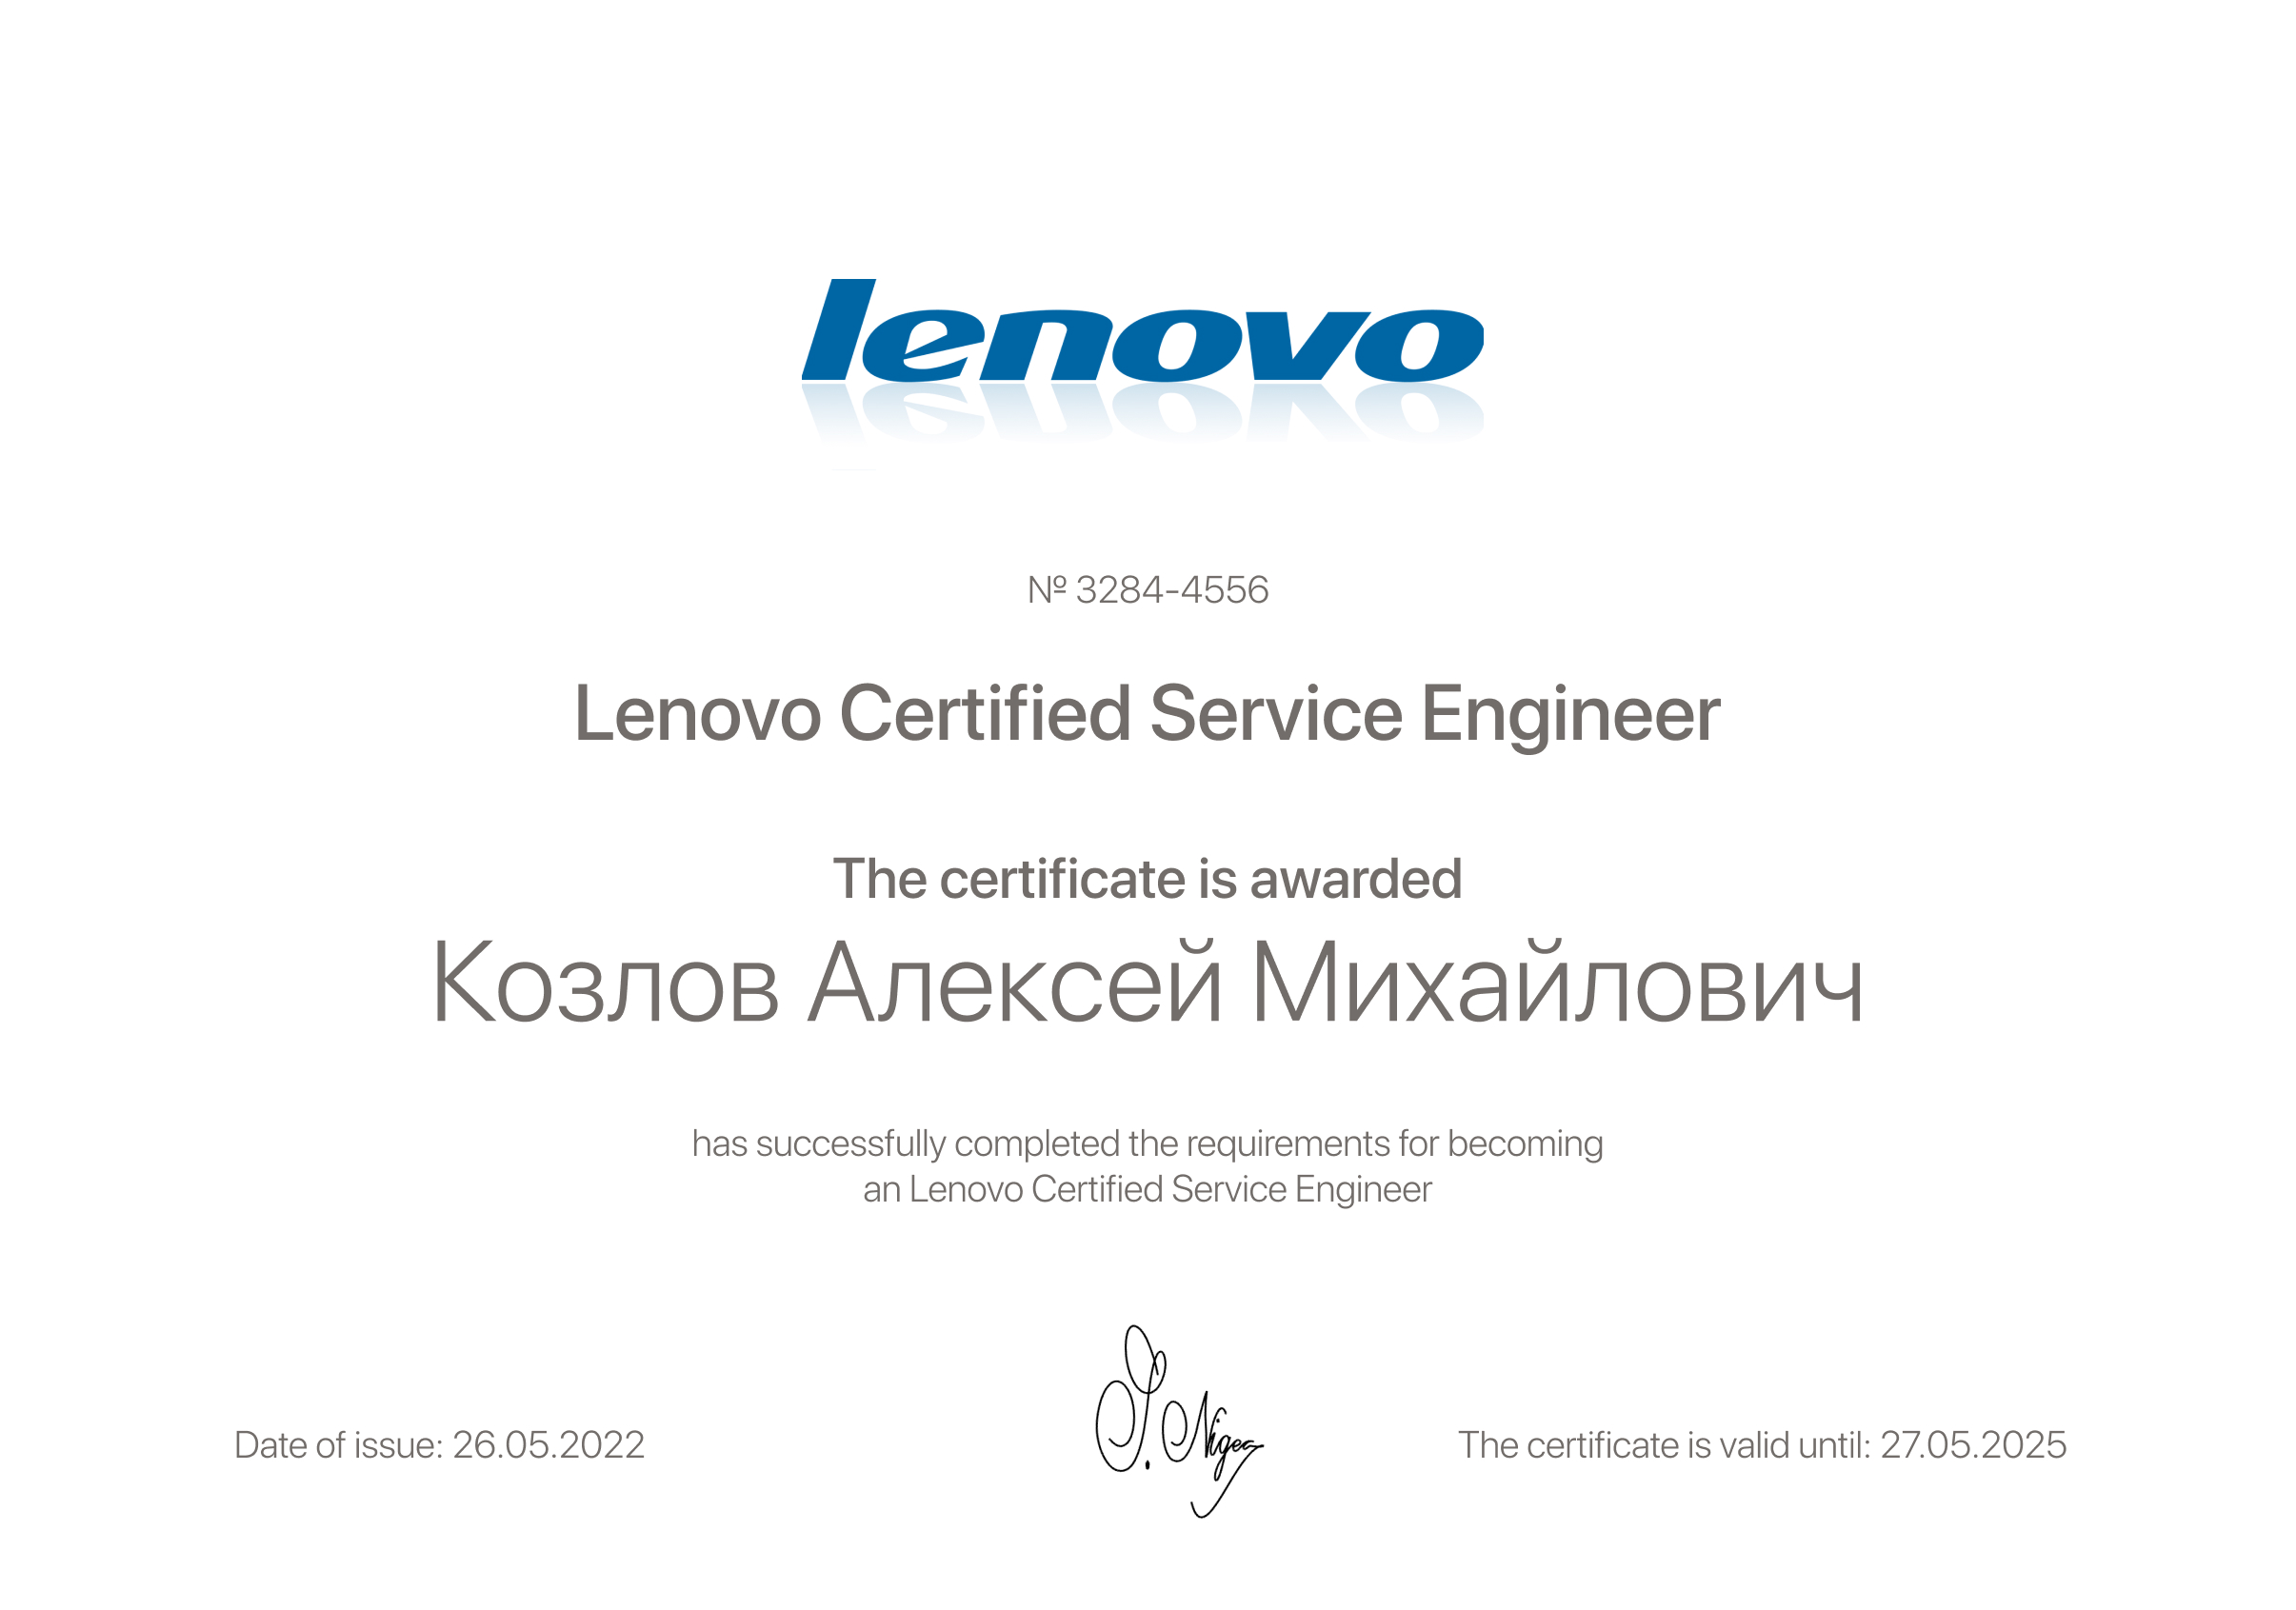 Центр lenovo качественно с гарантией. Сервисный центр Lenovo в Москве.